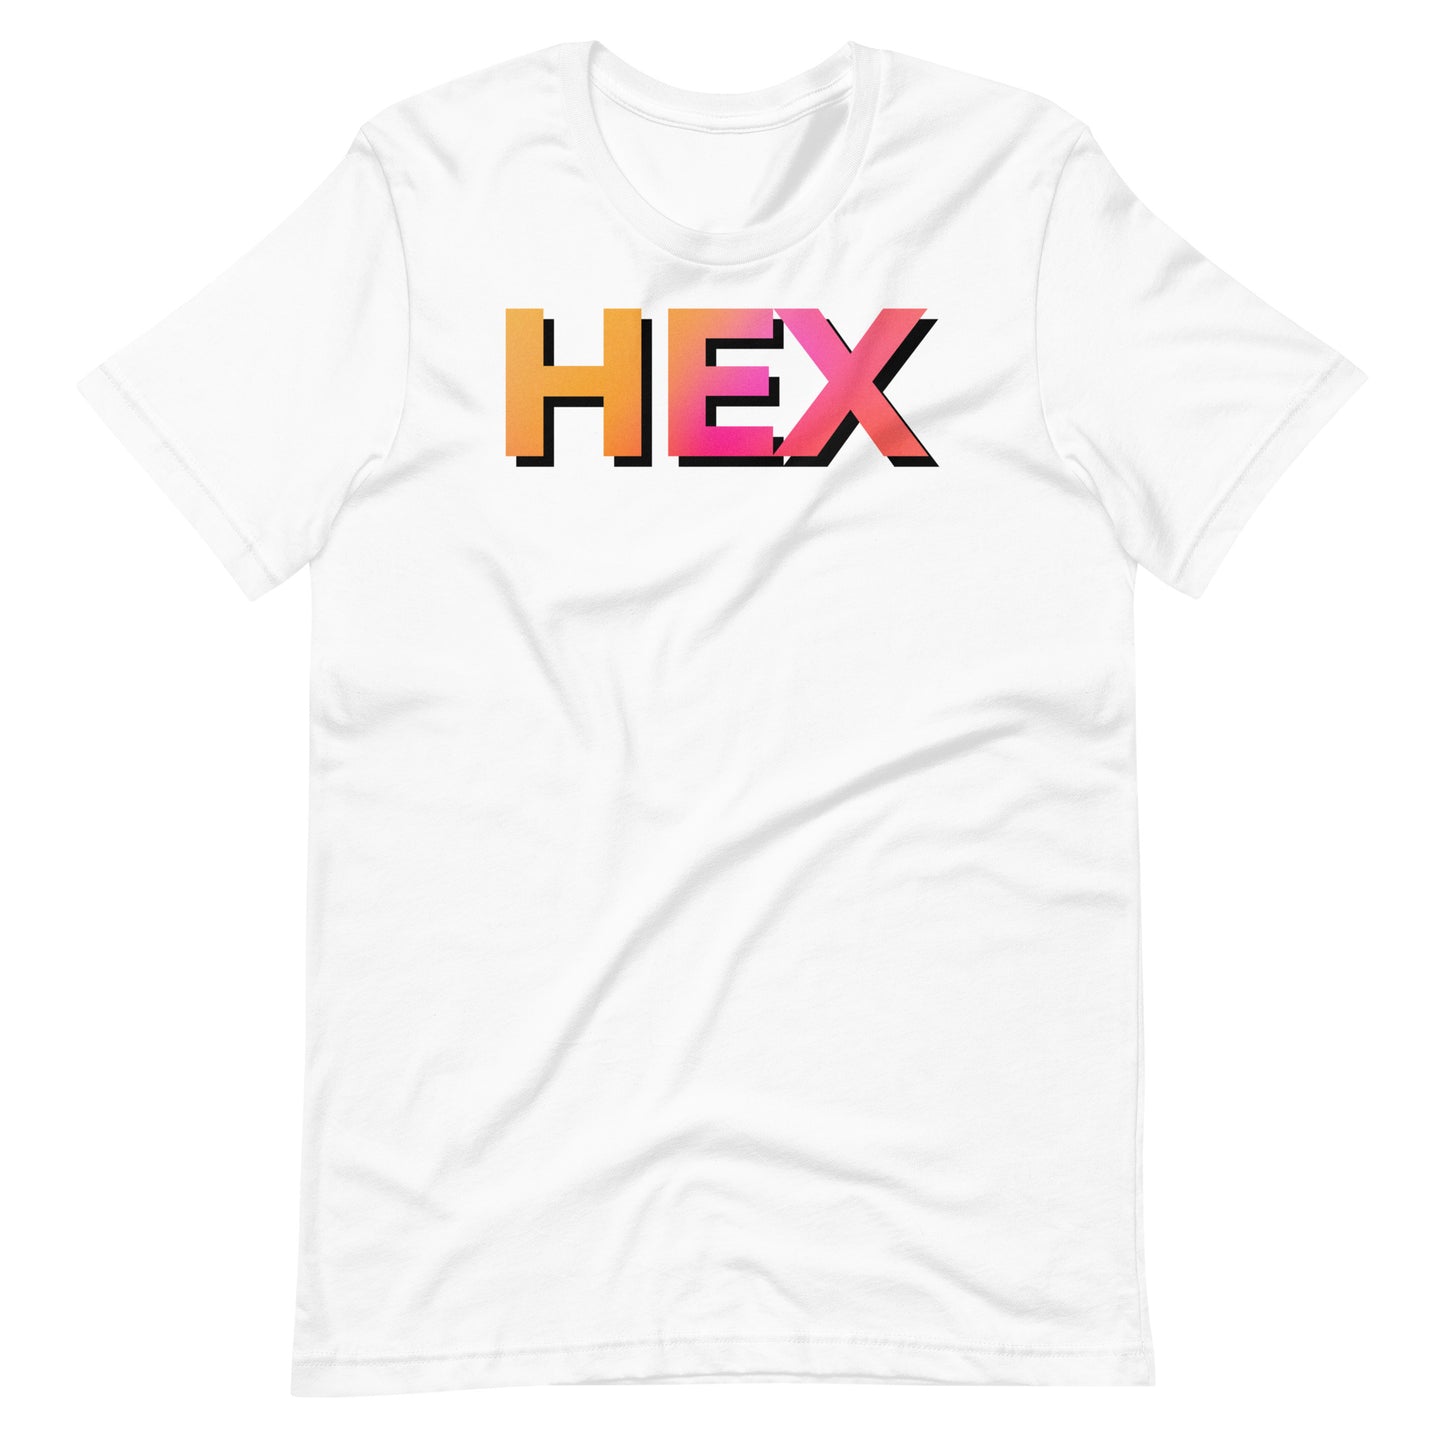 Shadowed HEX Unisex T-Shirt